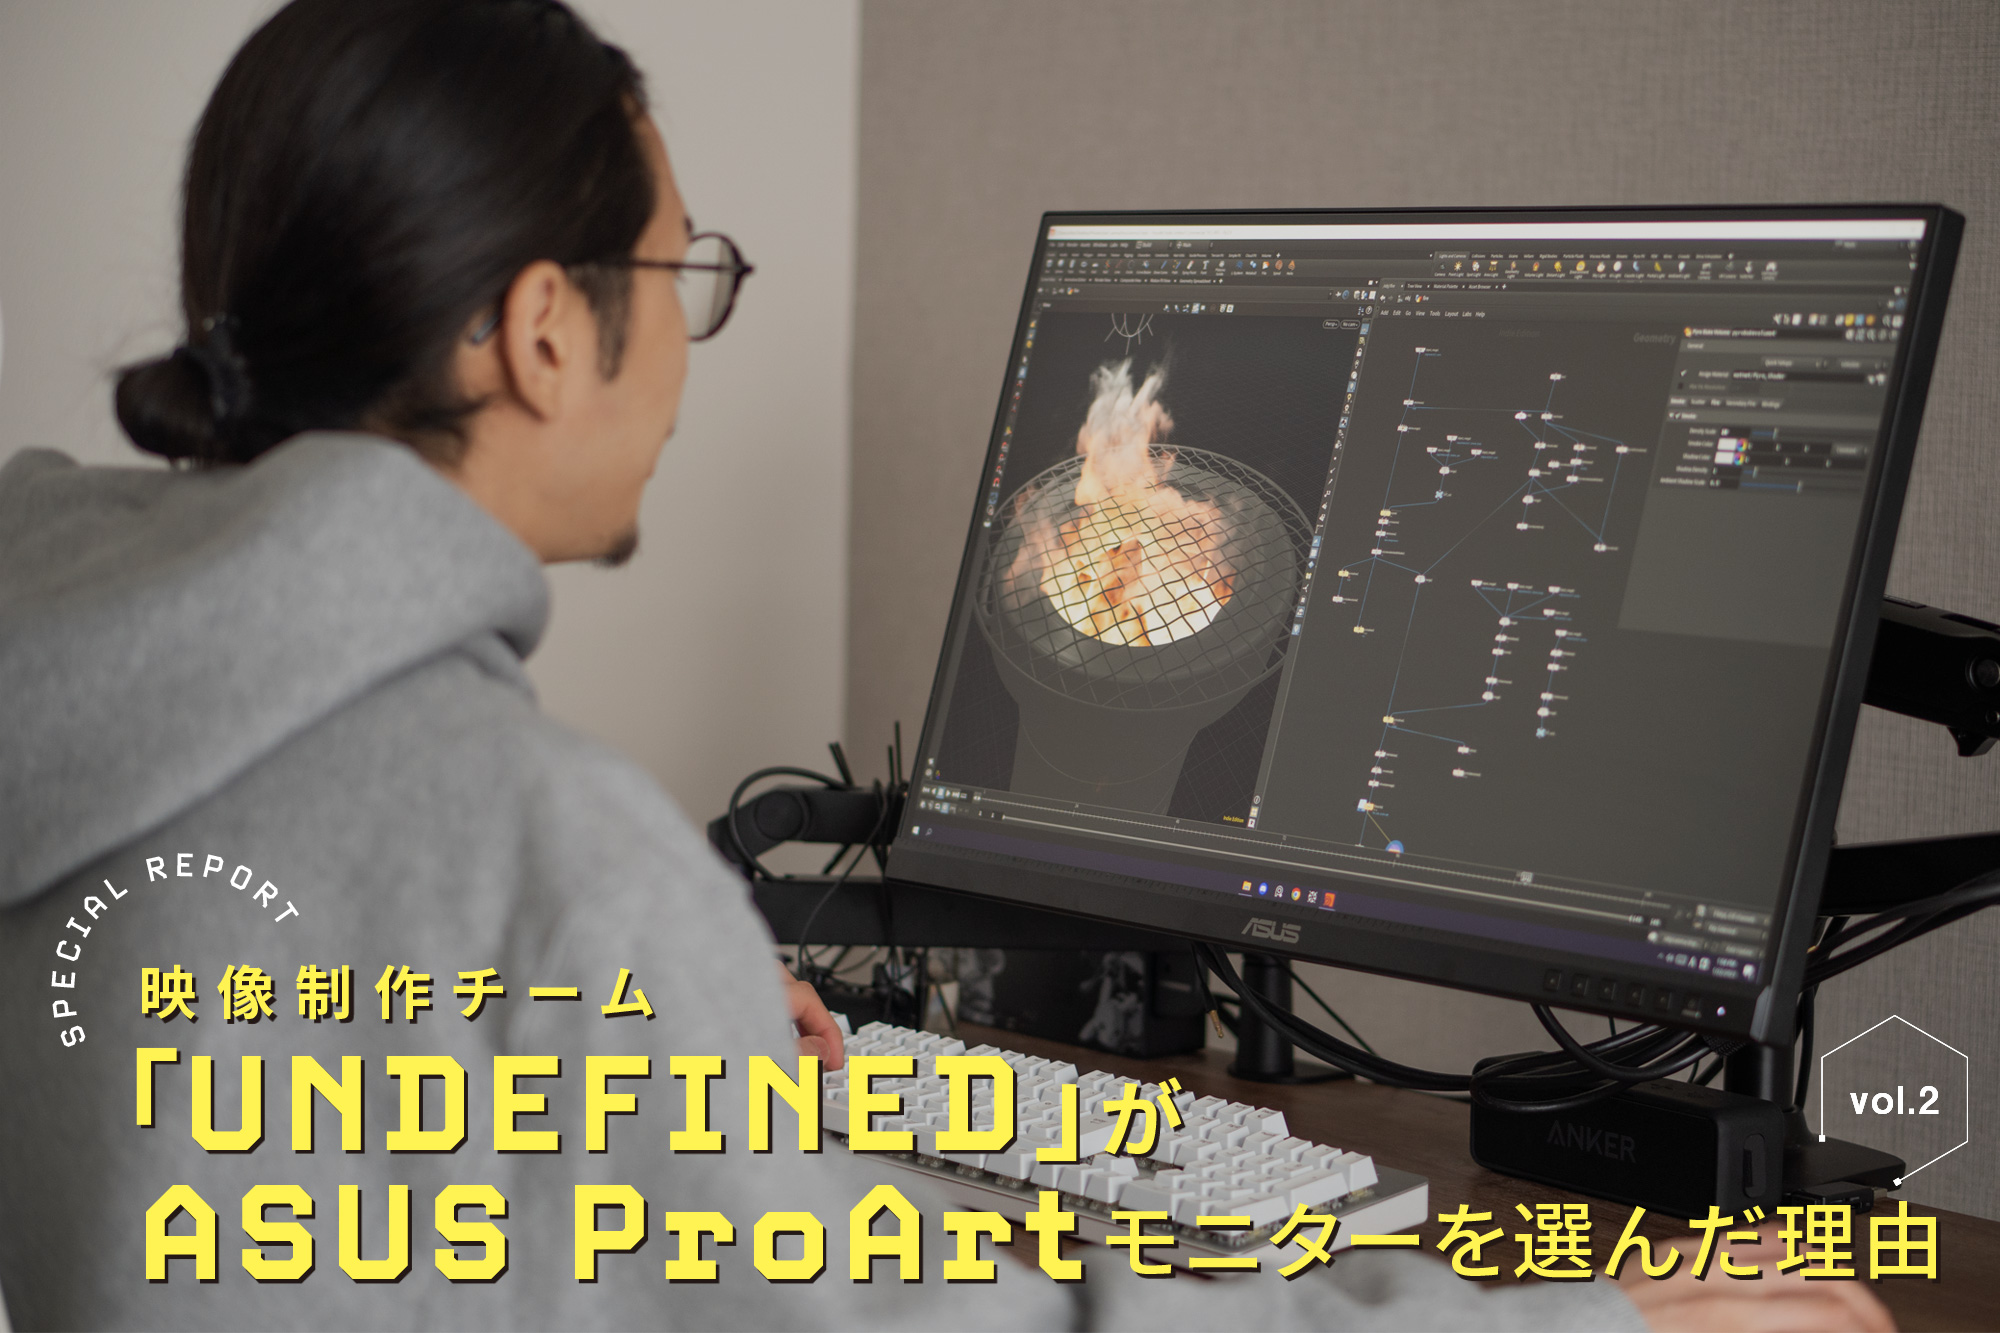 新世代CGアーティスト集団「UNDEFINED」が、ASUS ProArtモニターを選ん